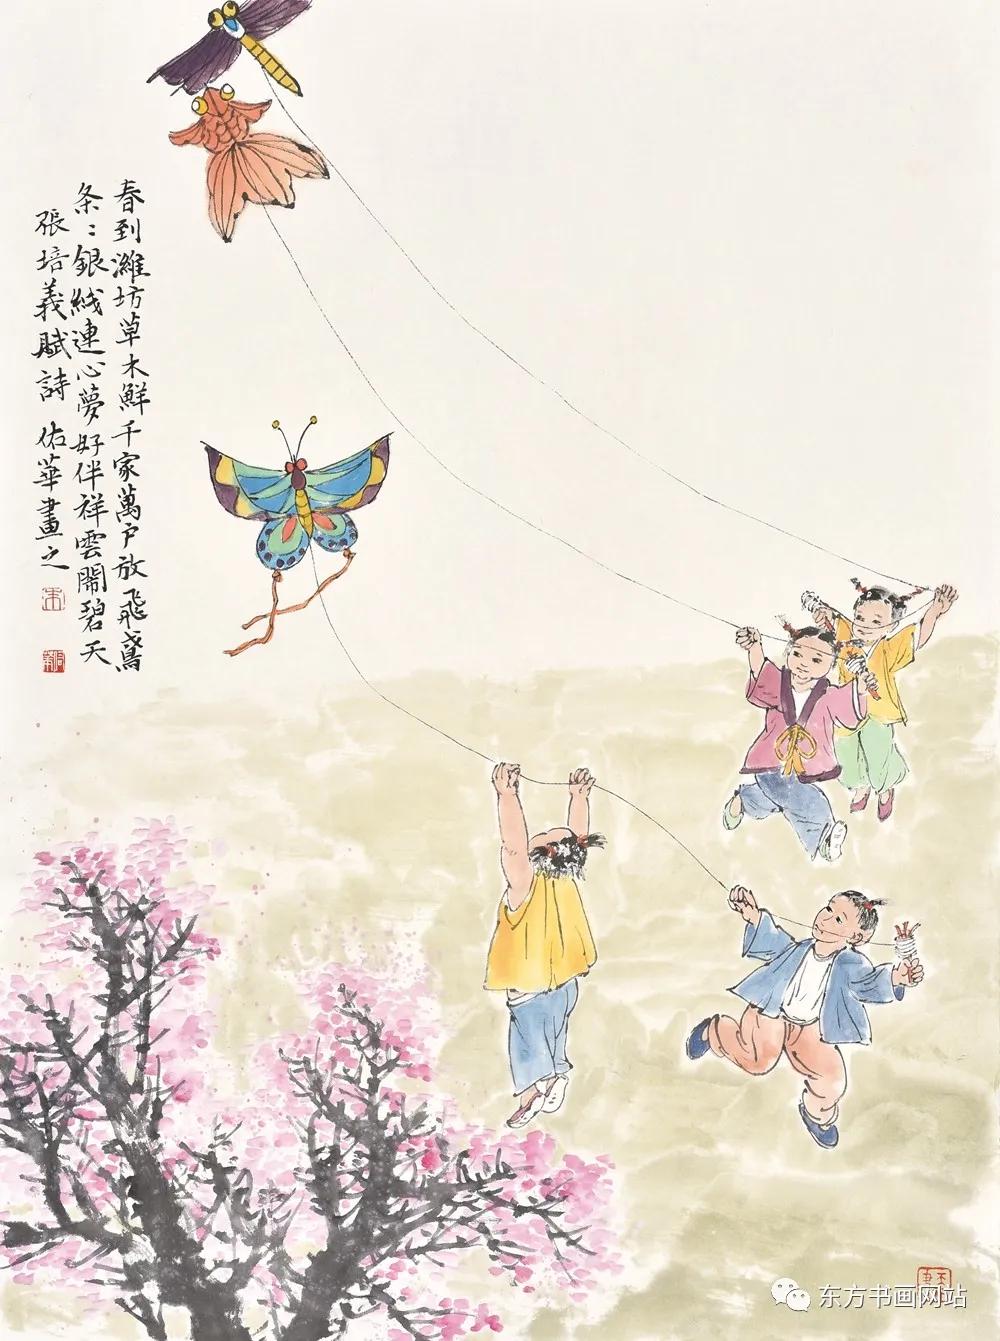 风筝文化最美风筝诗配画连载之六61朱佑华篇